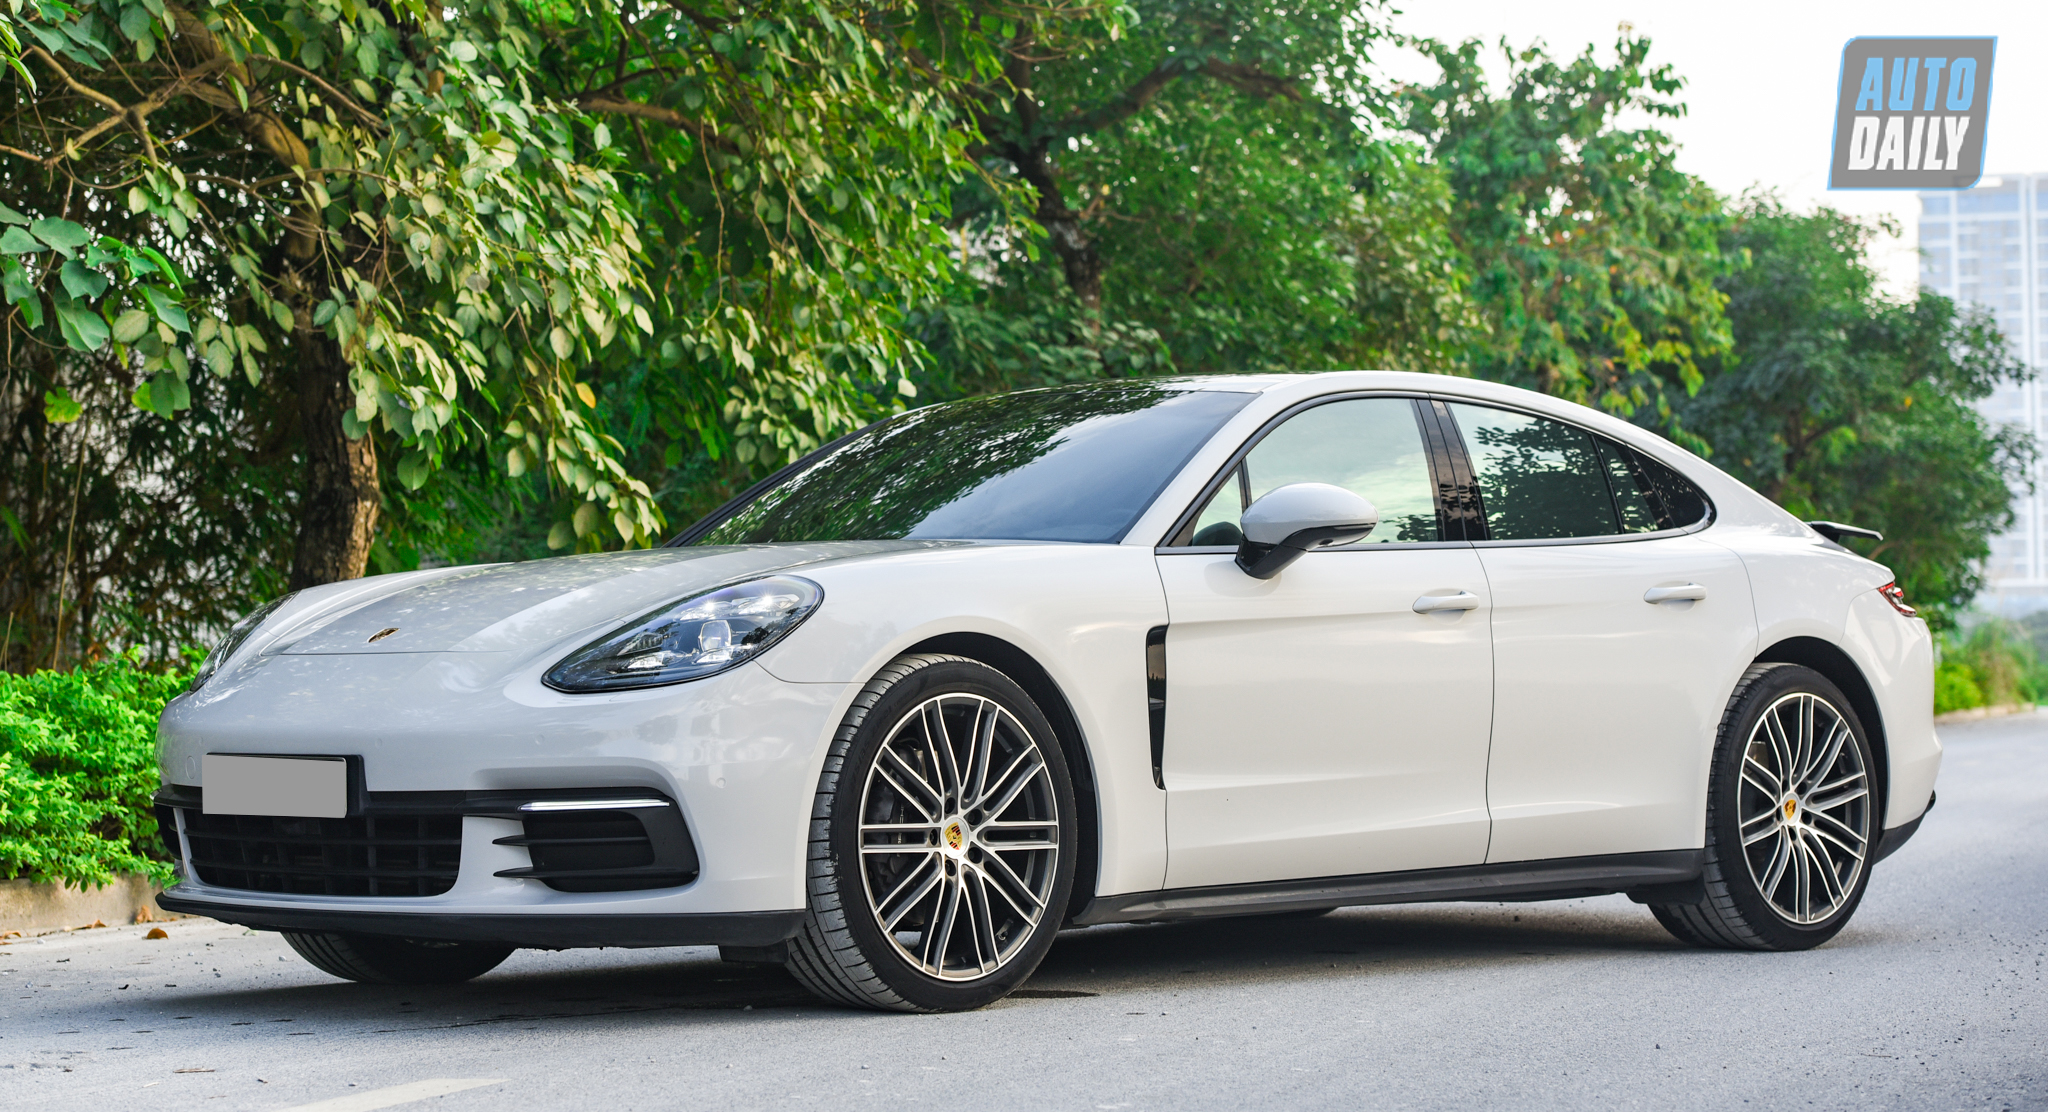 Sau 3 năm, Porsche Panamera được bán lại rẻ hơn gần 2 tỷ đồng dsc-2124.jpg